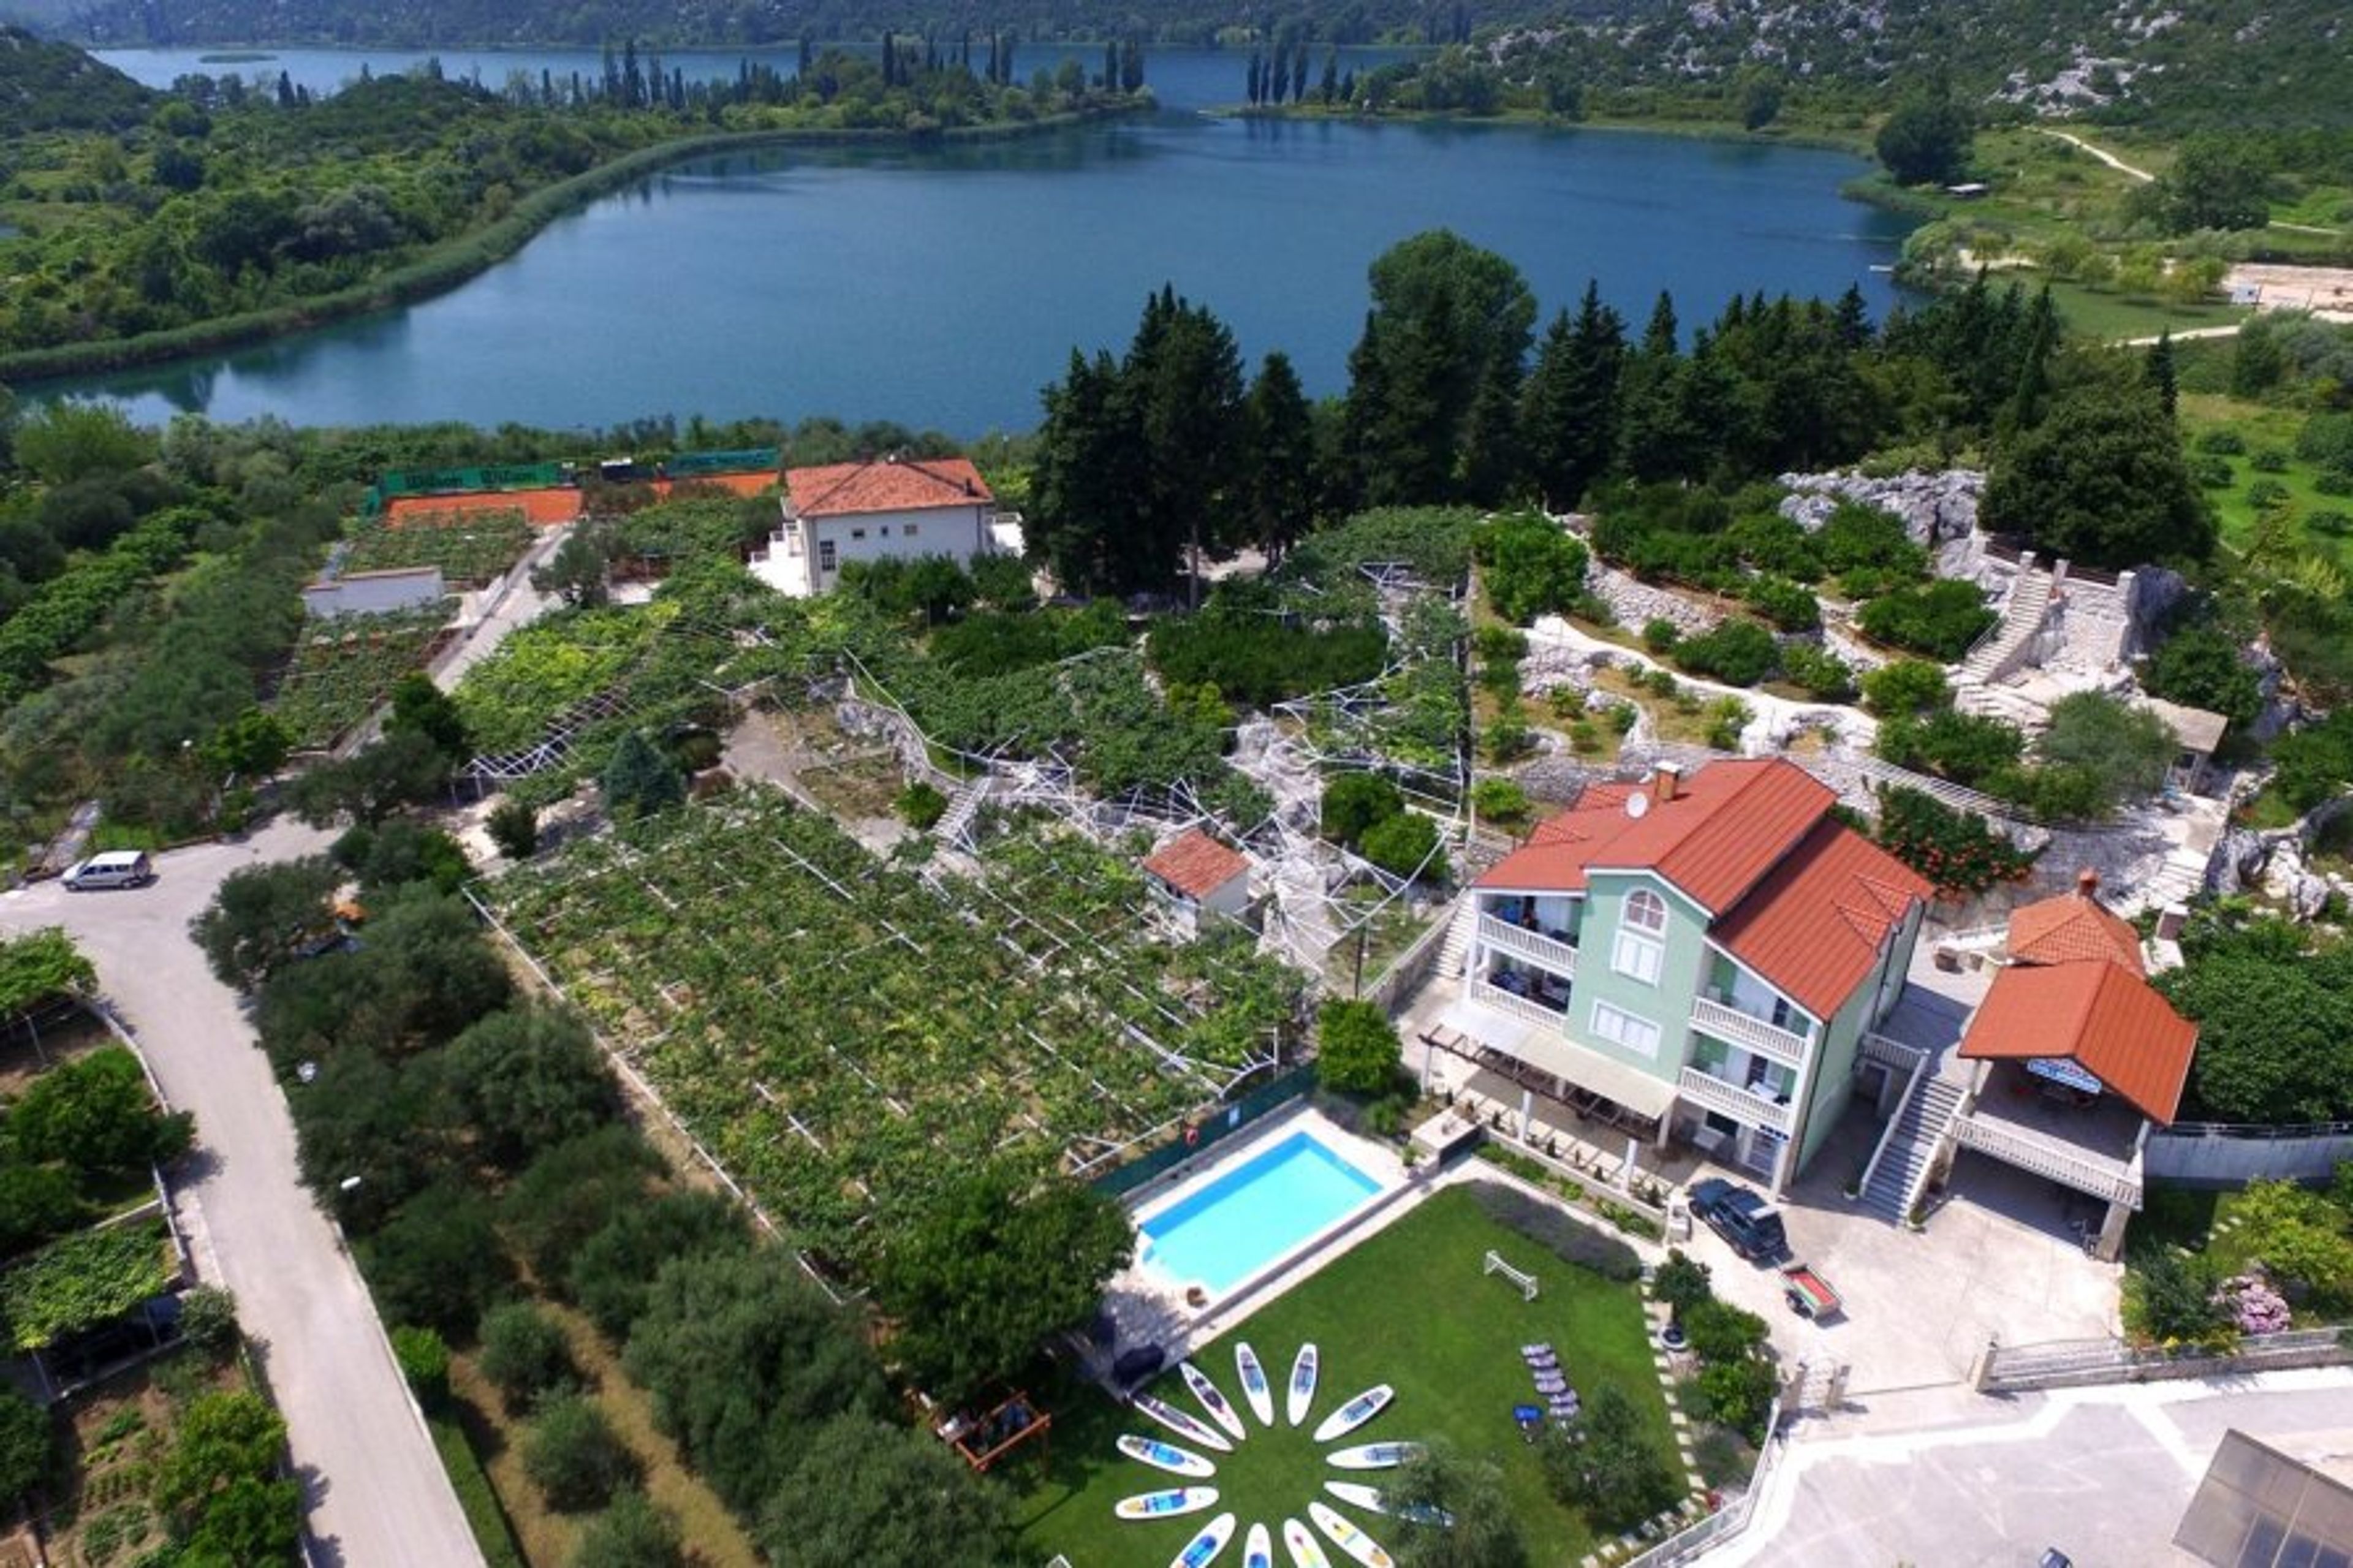 villa solo and Bacina lakes behind